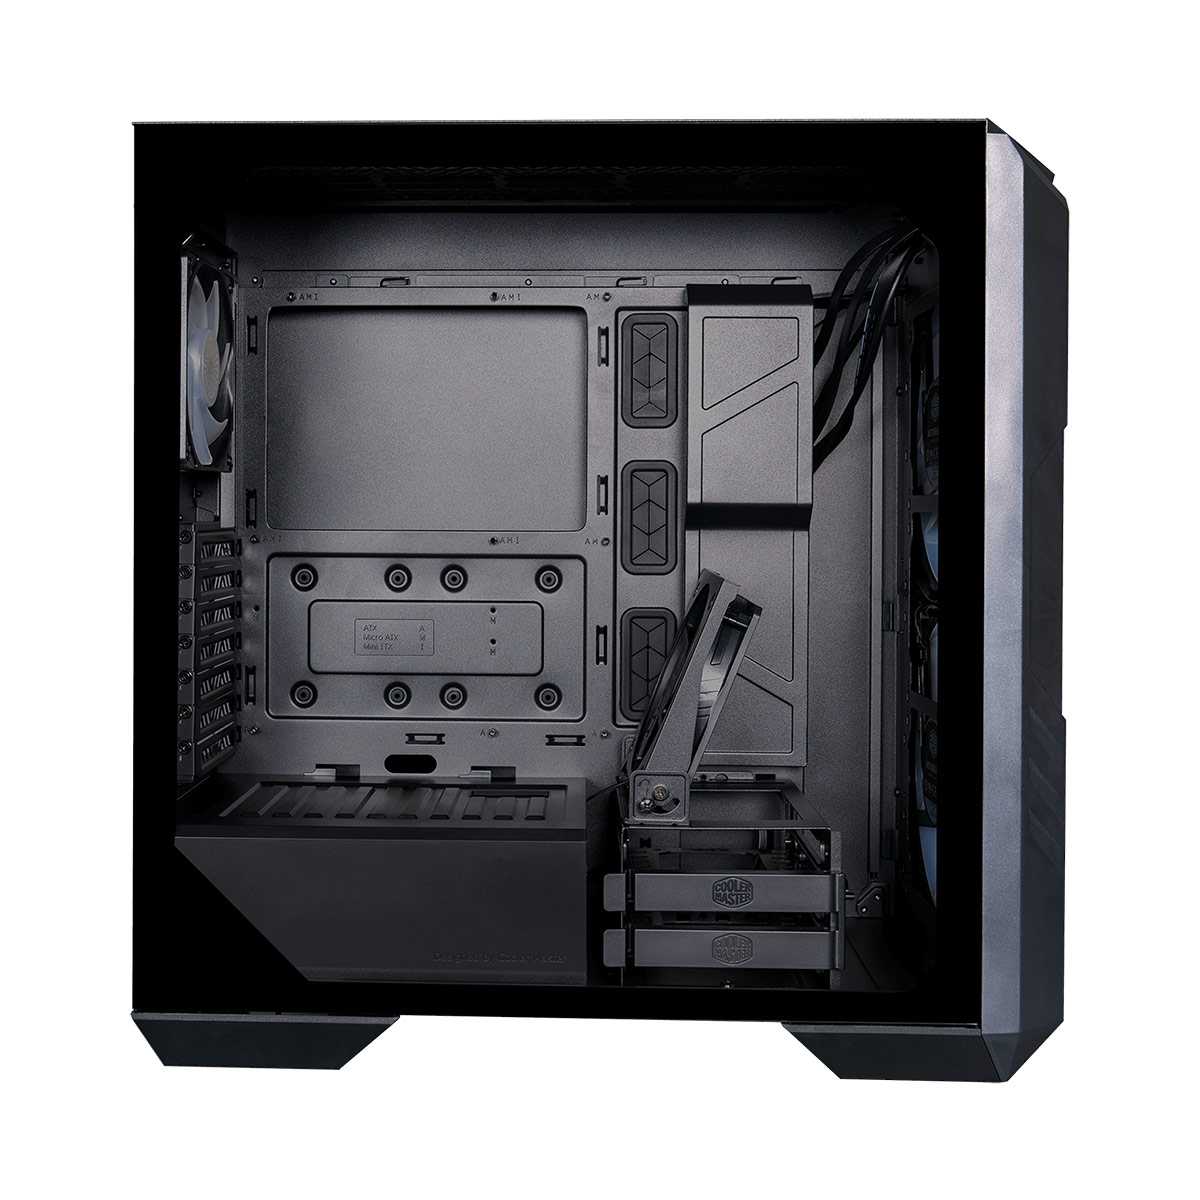 Cooler master haf 500 black case review